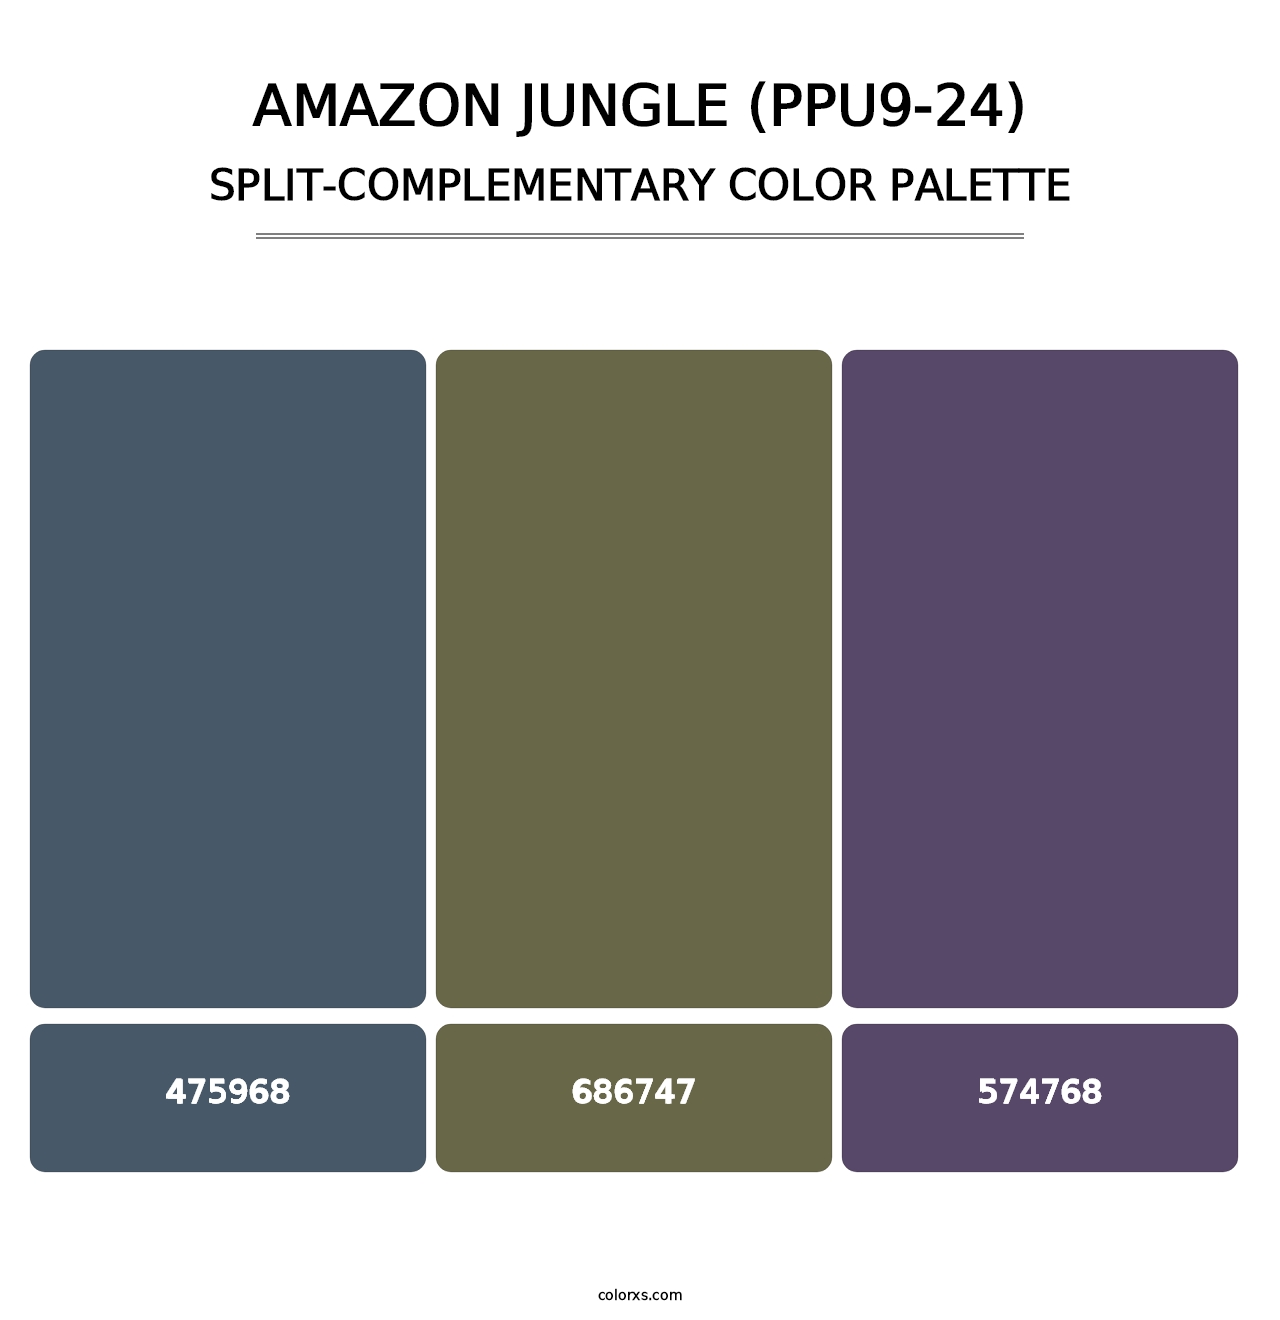 Amazon Jungle (PPU9-24) - Split-Complementary Color Palette